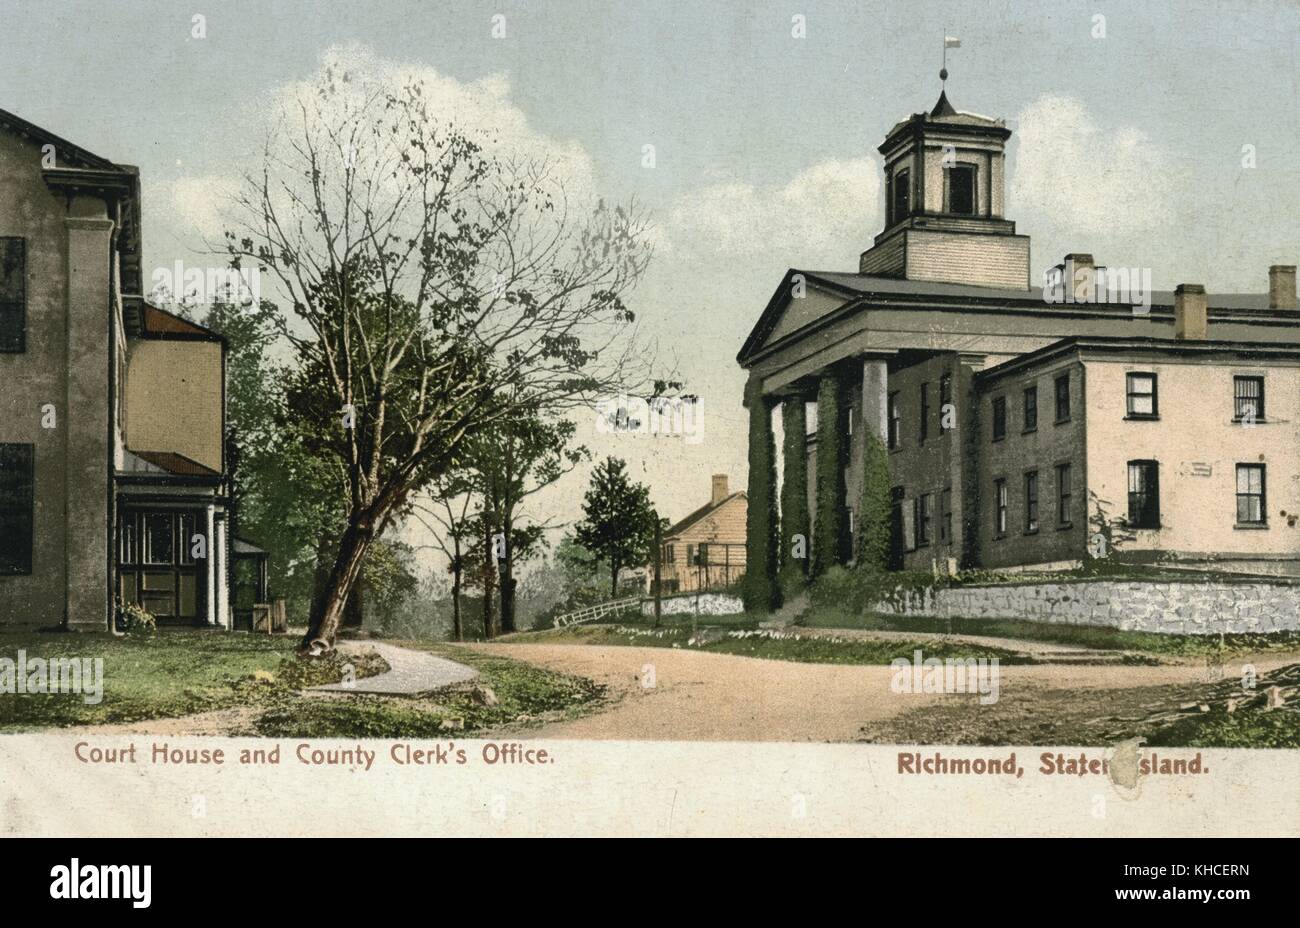 Postal a color que muestra la oficina del secretario del condado y el juzgado, Richmond, Staten Island, Nueva York, 1900. De la Biblioteca Pública de Nueva York. Foto de stock